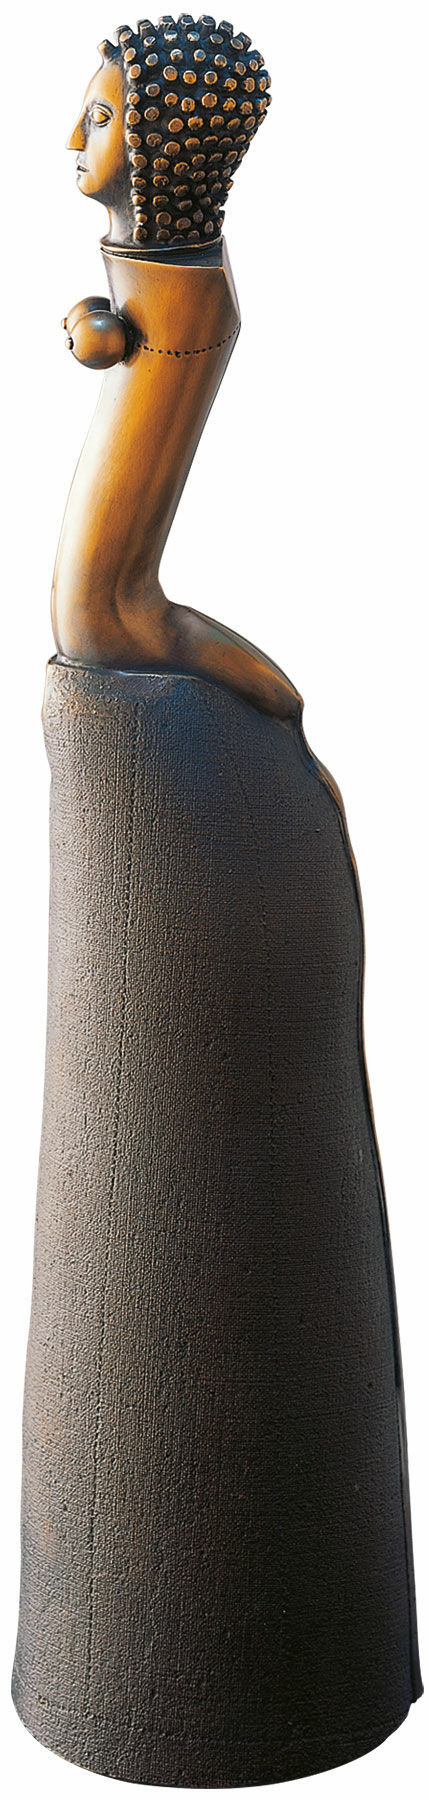 Sculpture "Figurine avec jupe longue", bronze von Paul Wunderlich